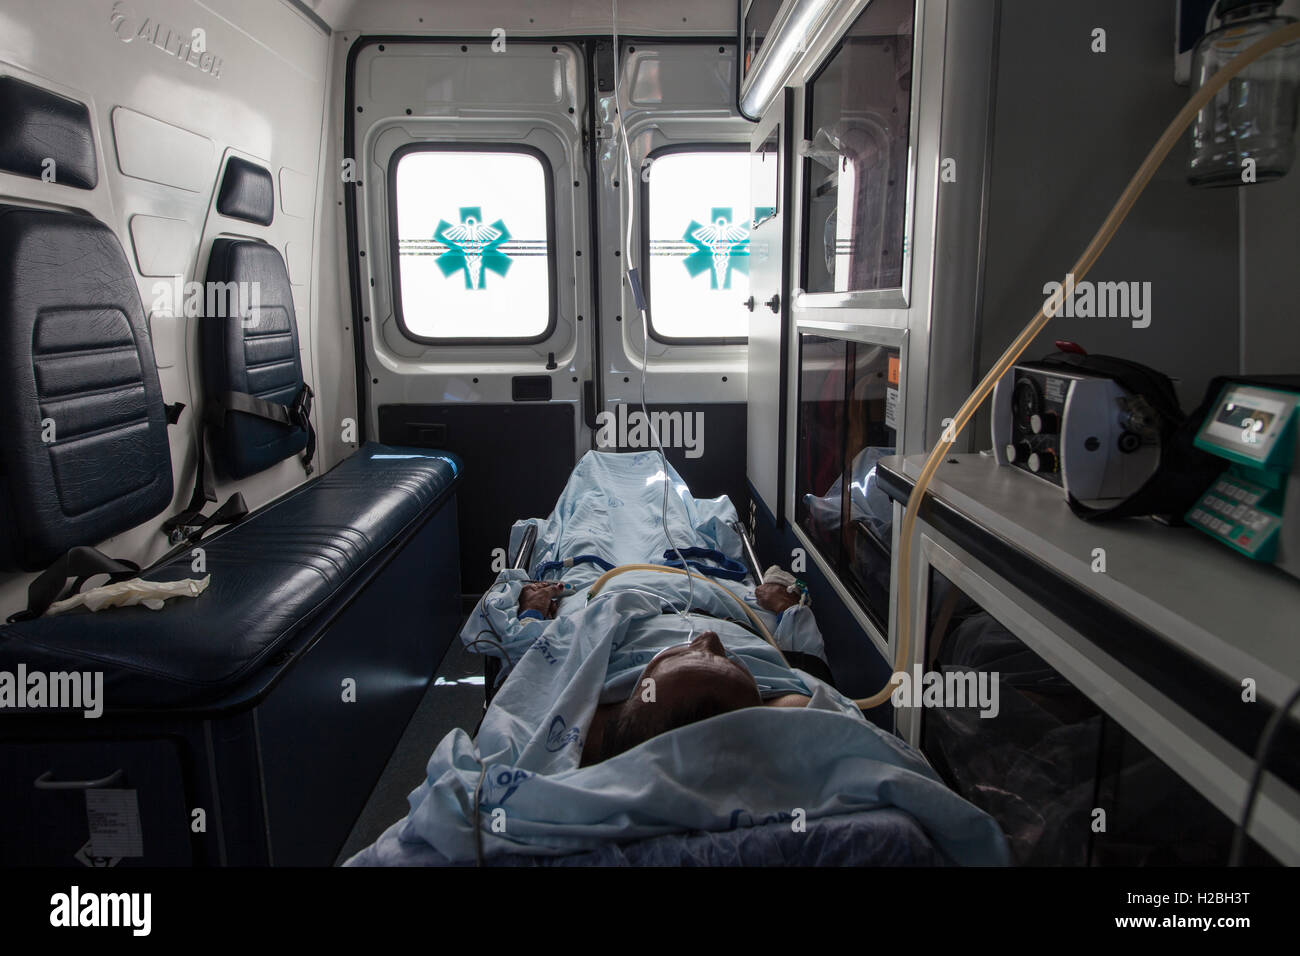 Paciente dentro de la ambulancia, un vehículo para el transporte de enfermos o heridos hacia, desde o entre lugares de tratamiento para una enfermedad o lesión, y en algunos casos también proporcionará atención médica fuera del hospital a la paciente. Foto de stock